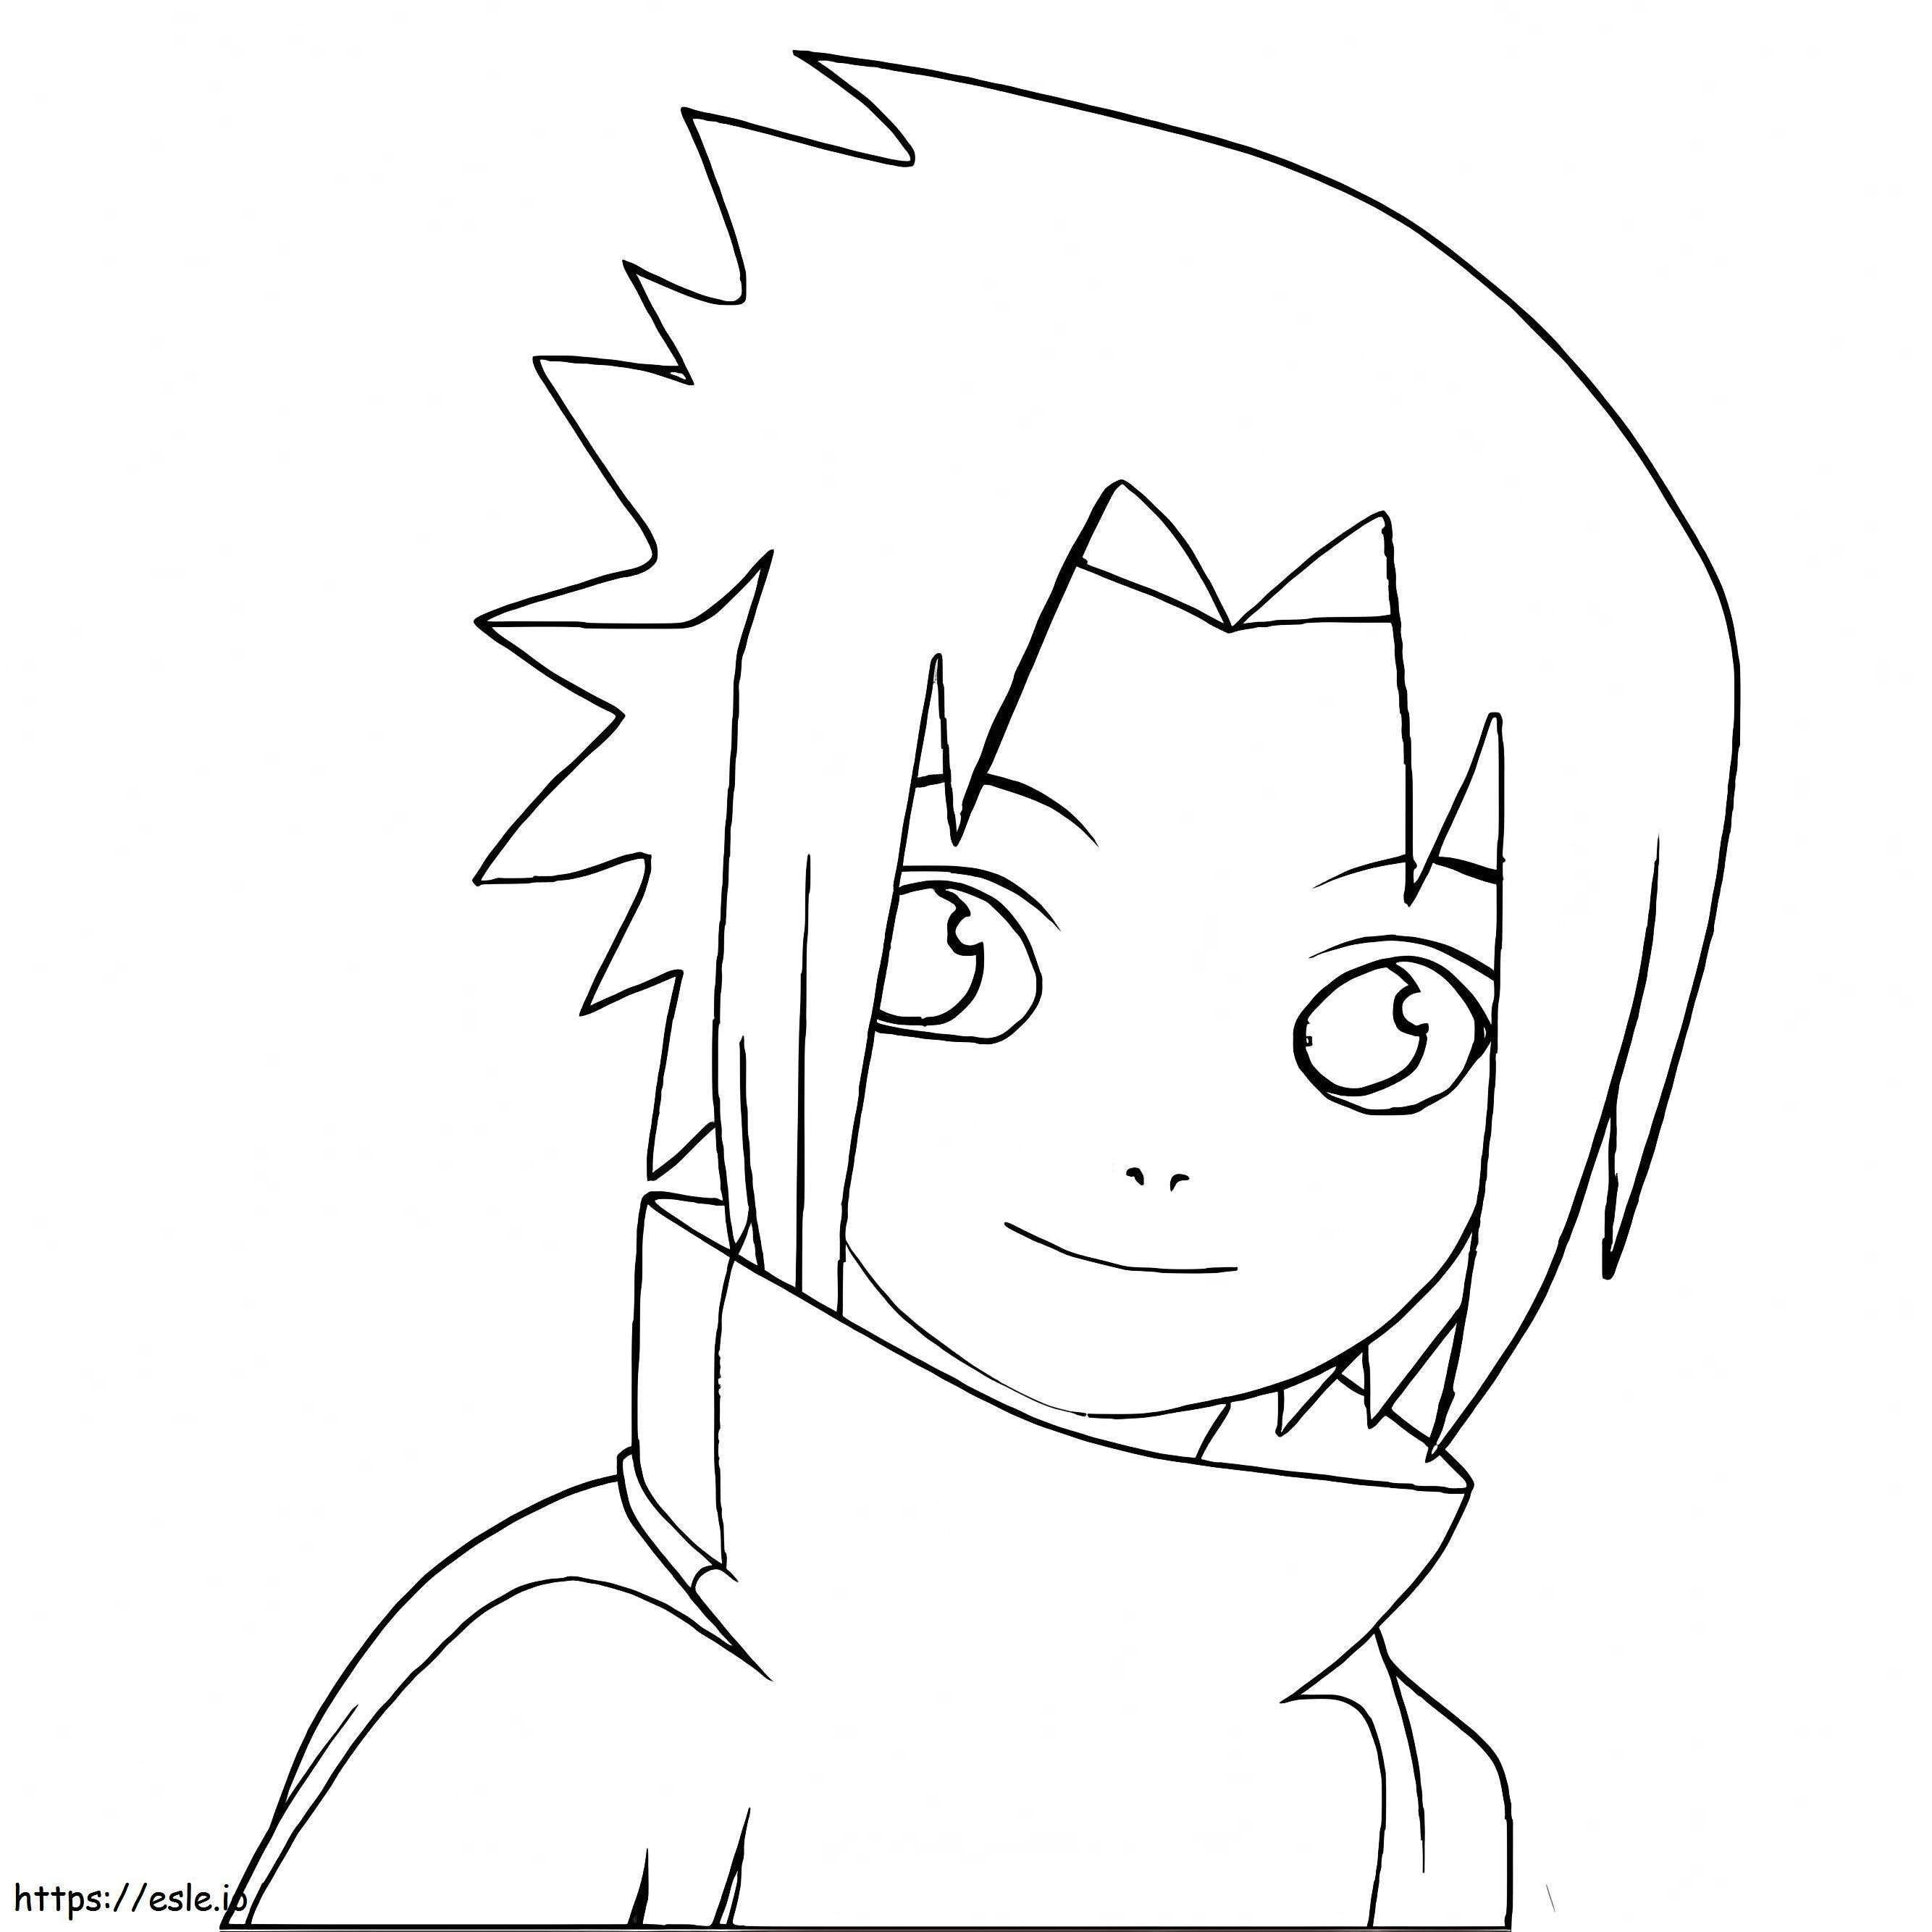 Sasuke Smiling coloring page